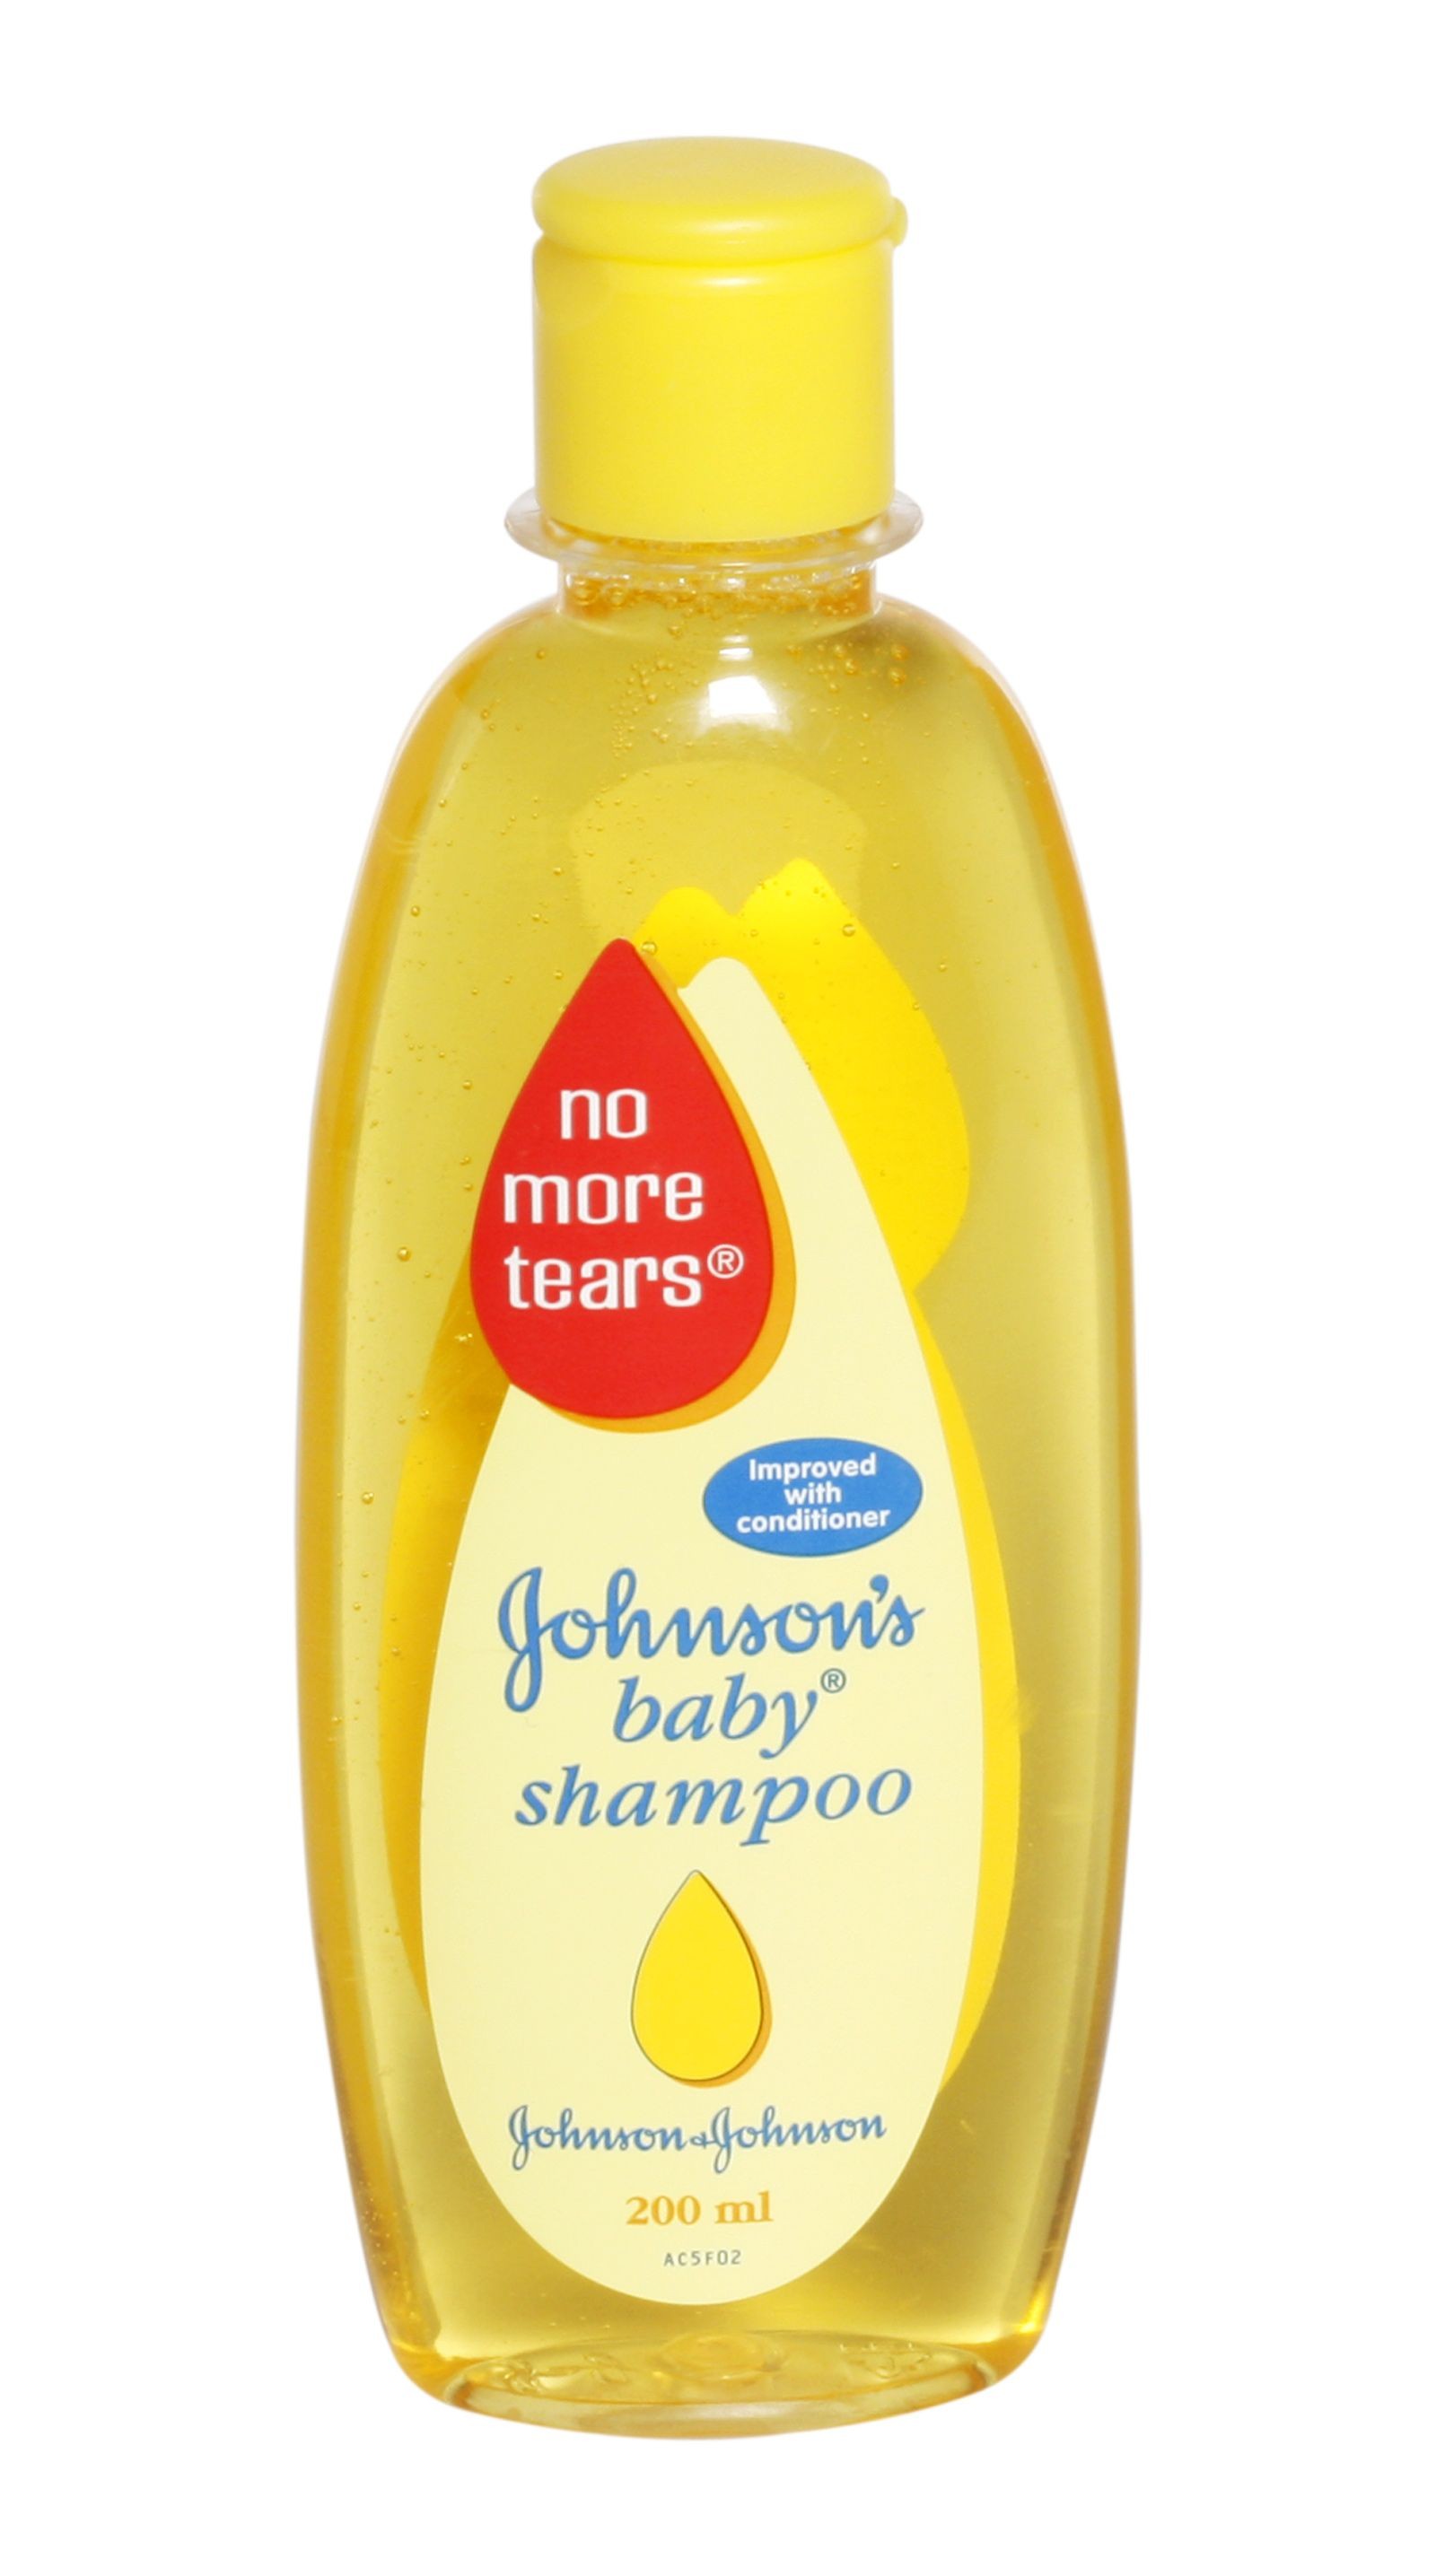 Johnson's Baby Shampoo - Johnson and Johnson